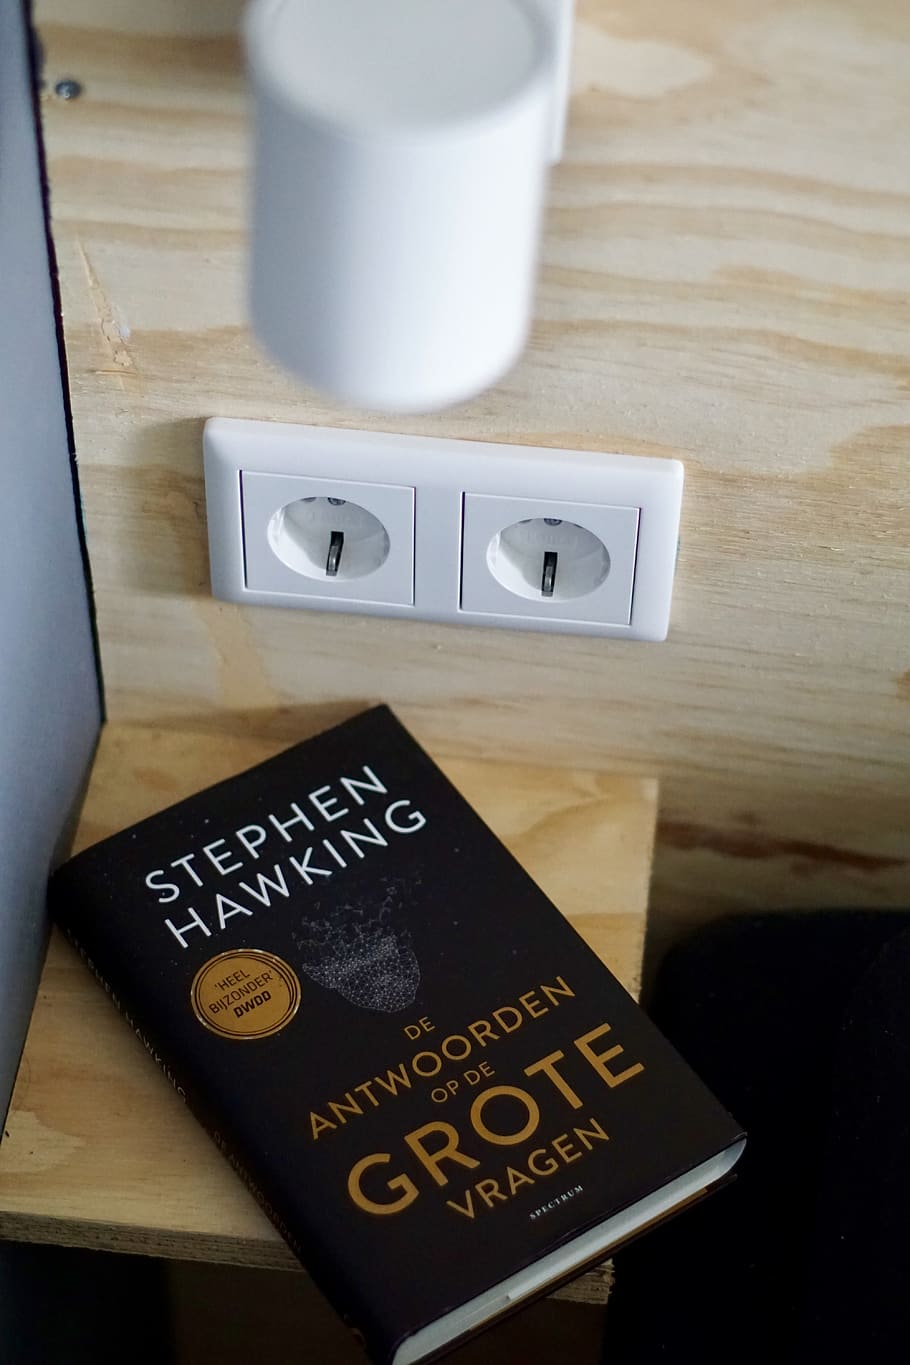 De Antwoorden Op De Grote Vragen by Stephen Hawking book, lamp